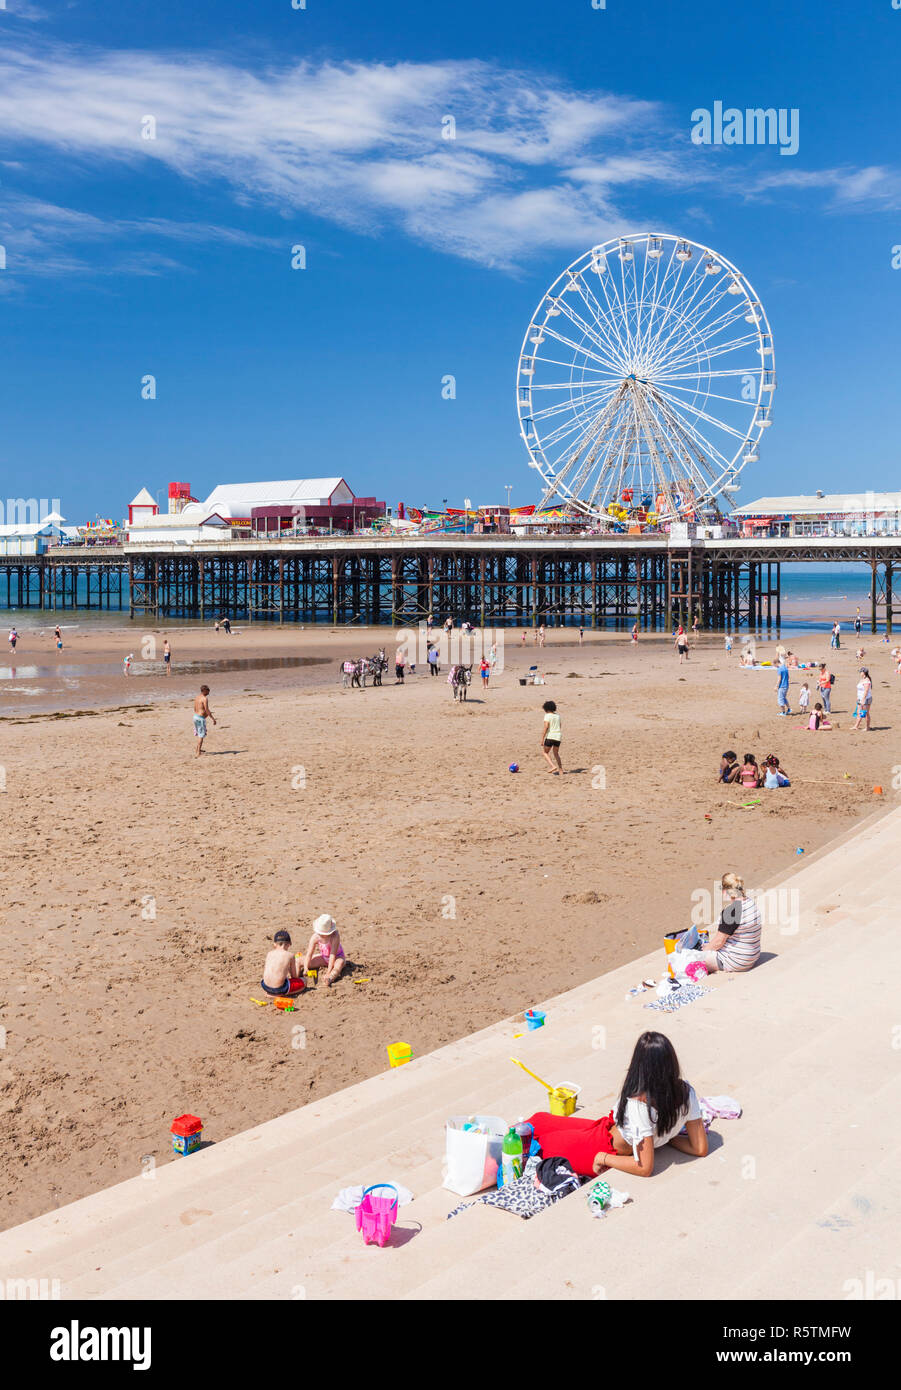 Plage de Blackpool grande roue d'été sur la plage de Blackpool Blackpool avec des gens sur la plage de sable du Blackpool Lancashire England UK GO Europe Banque D'Images